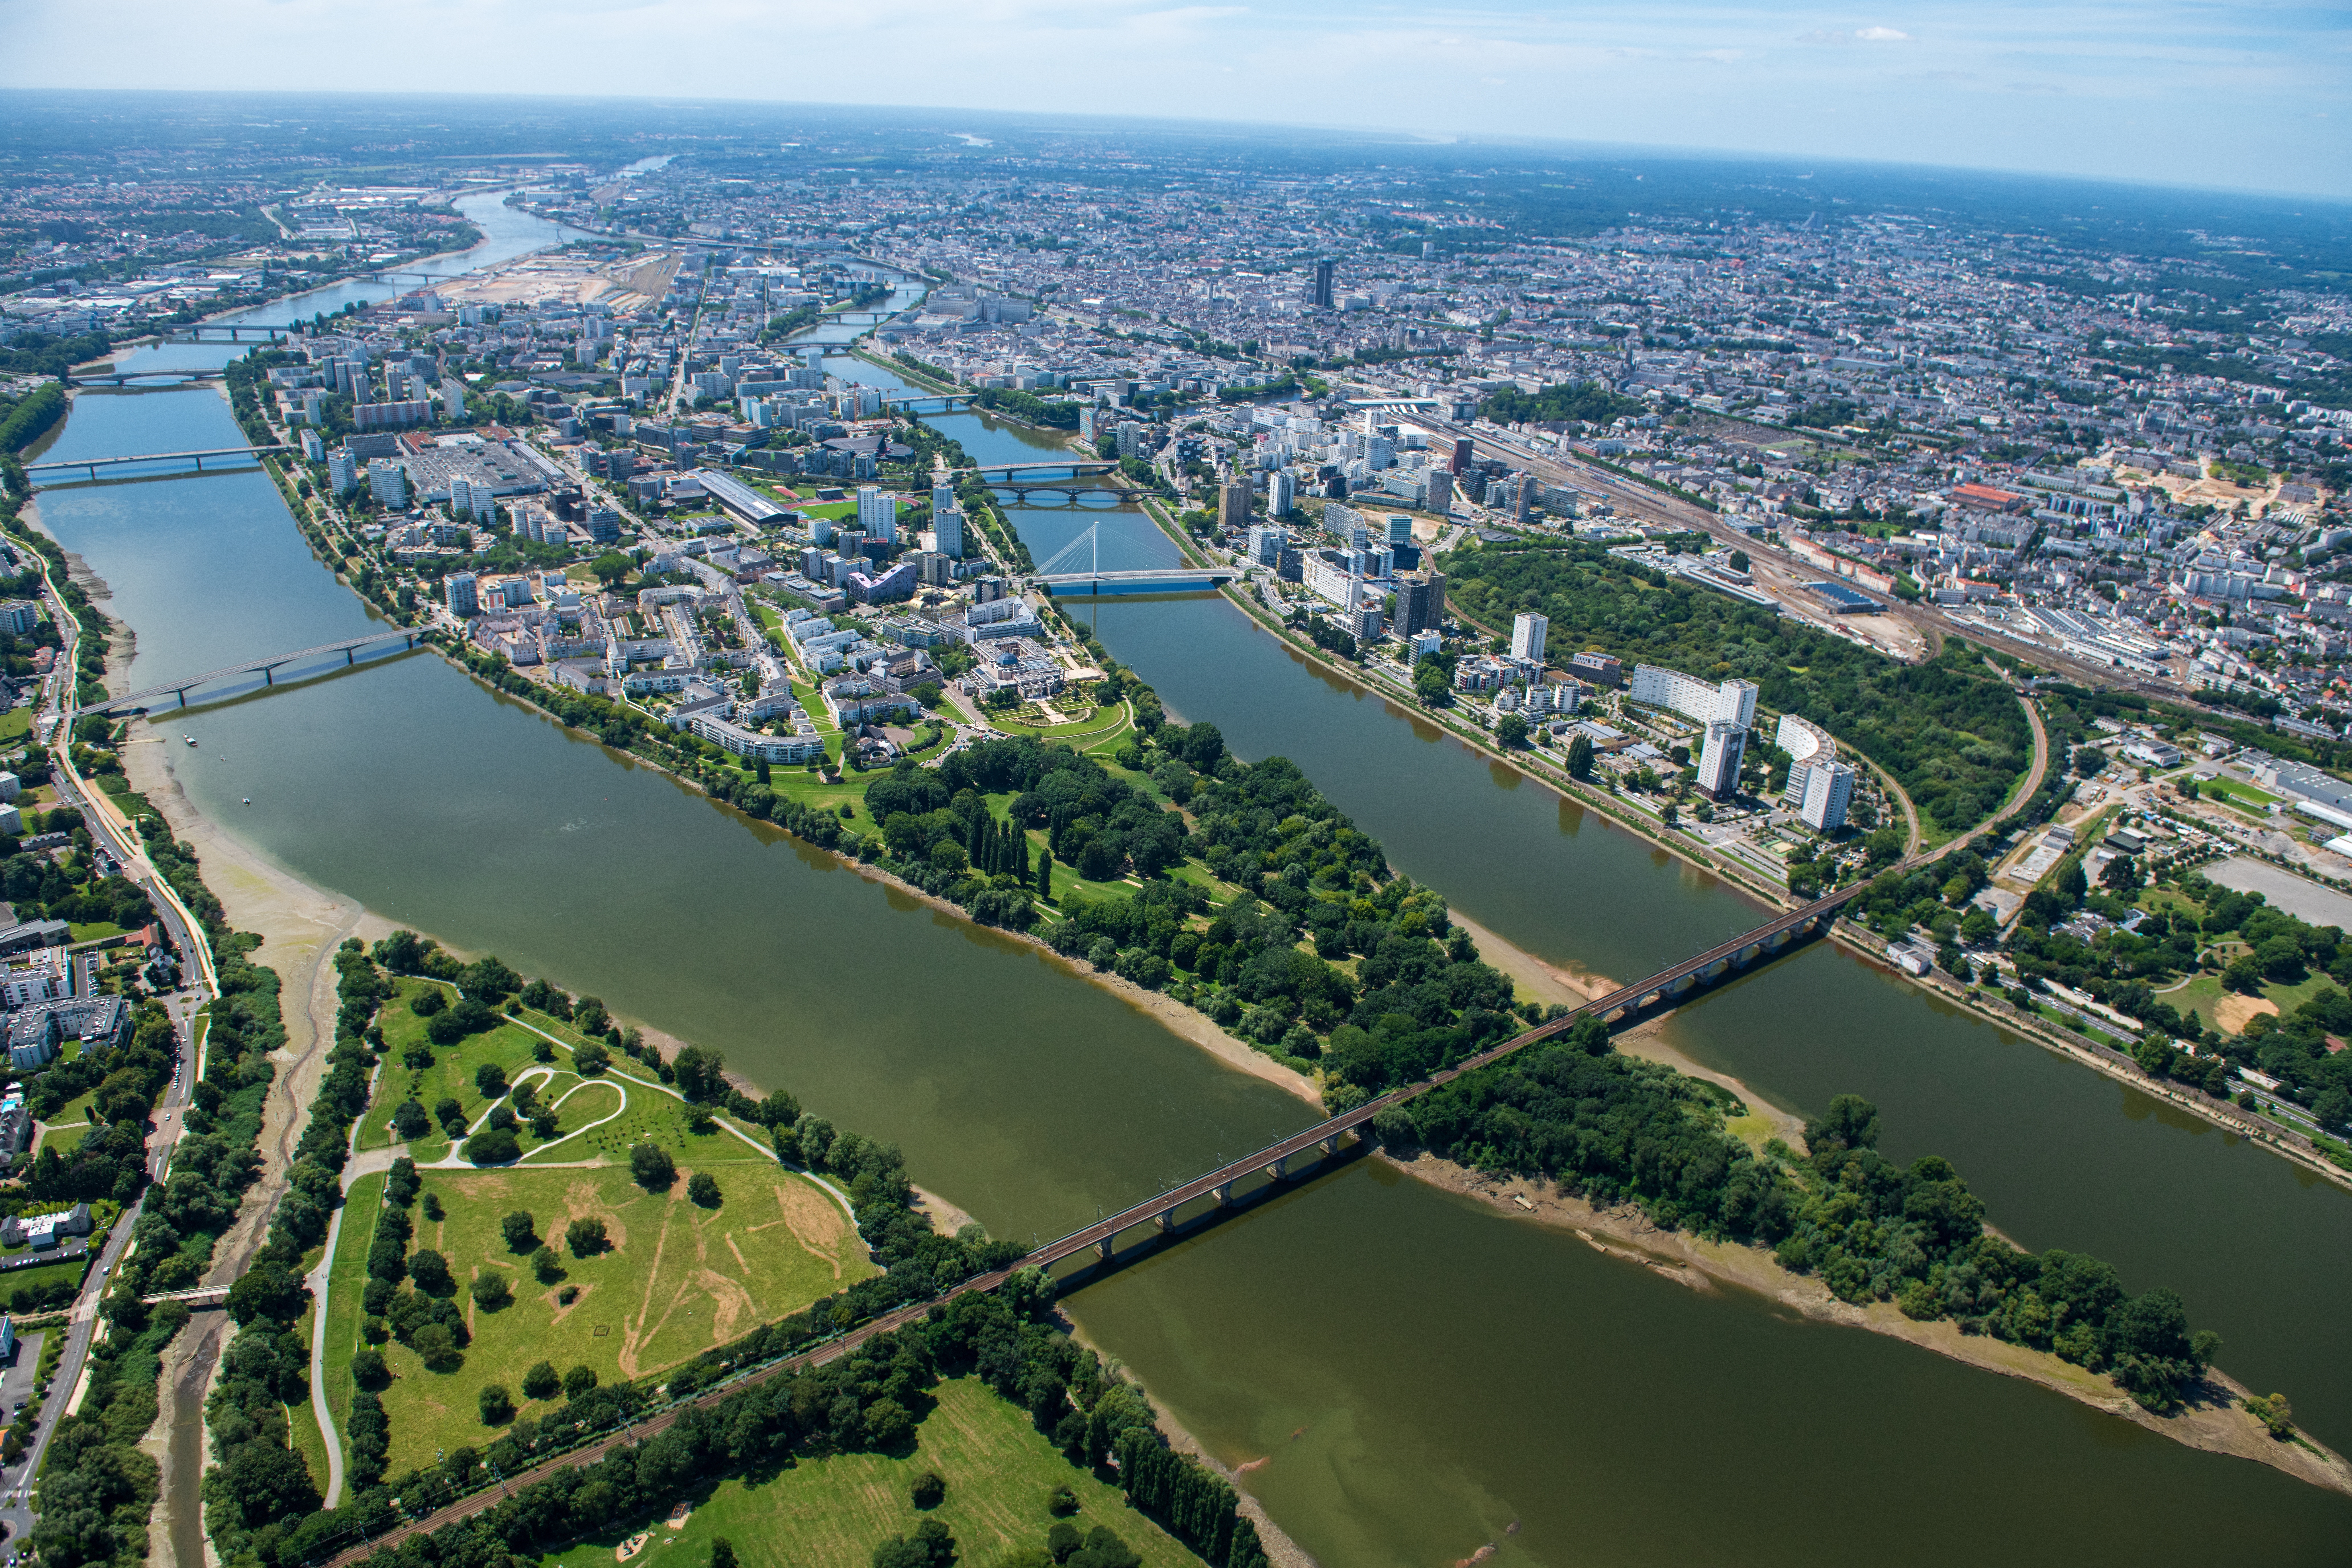 Vue aérienne de la ville de Nantes, traversée par la Loire.